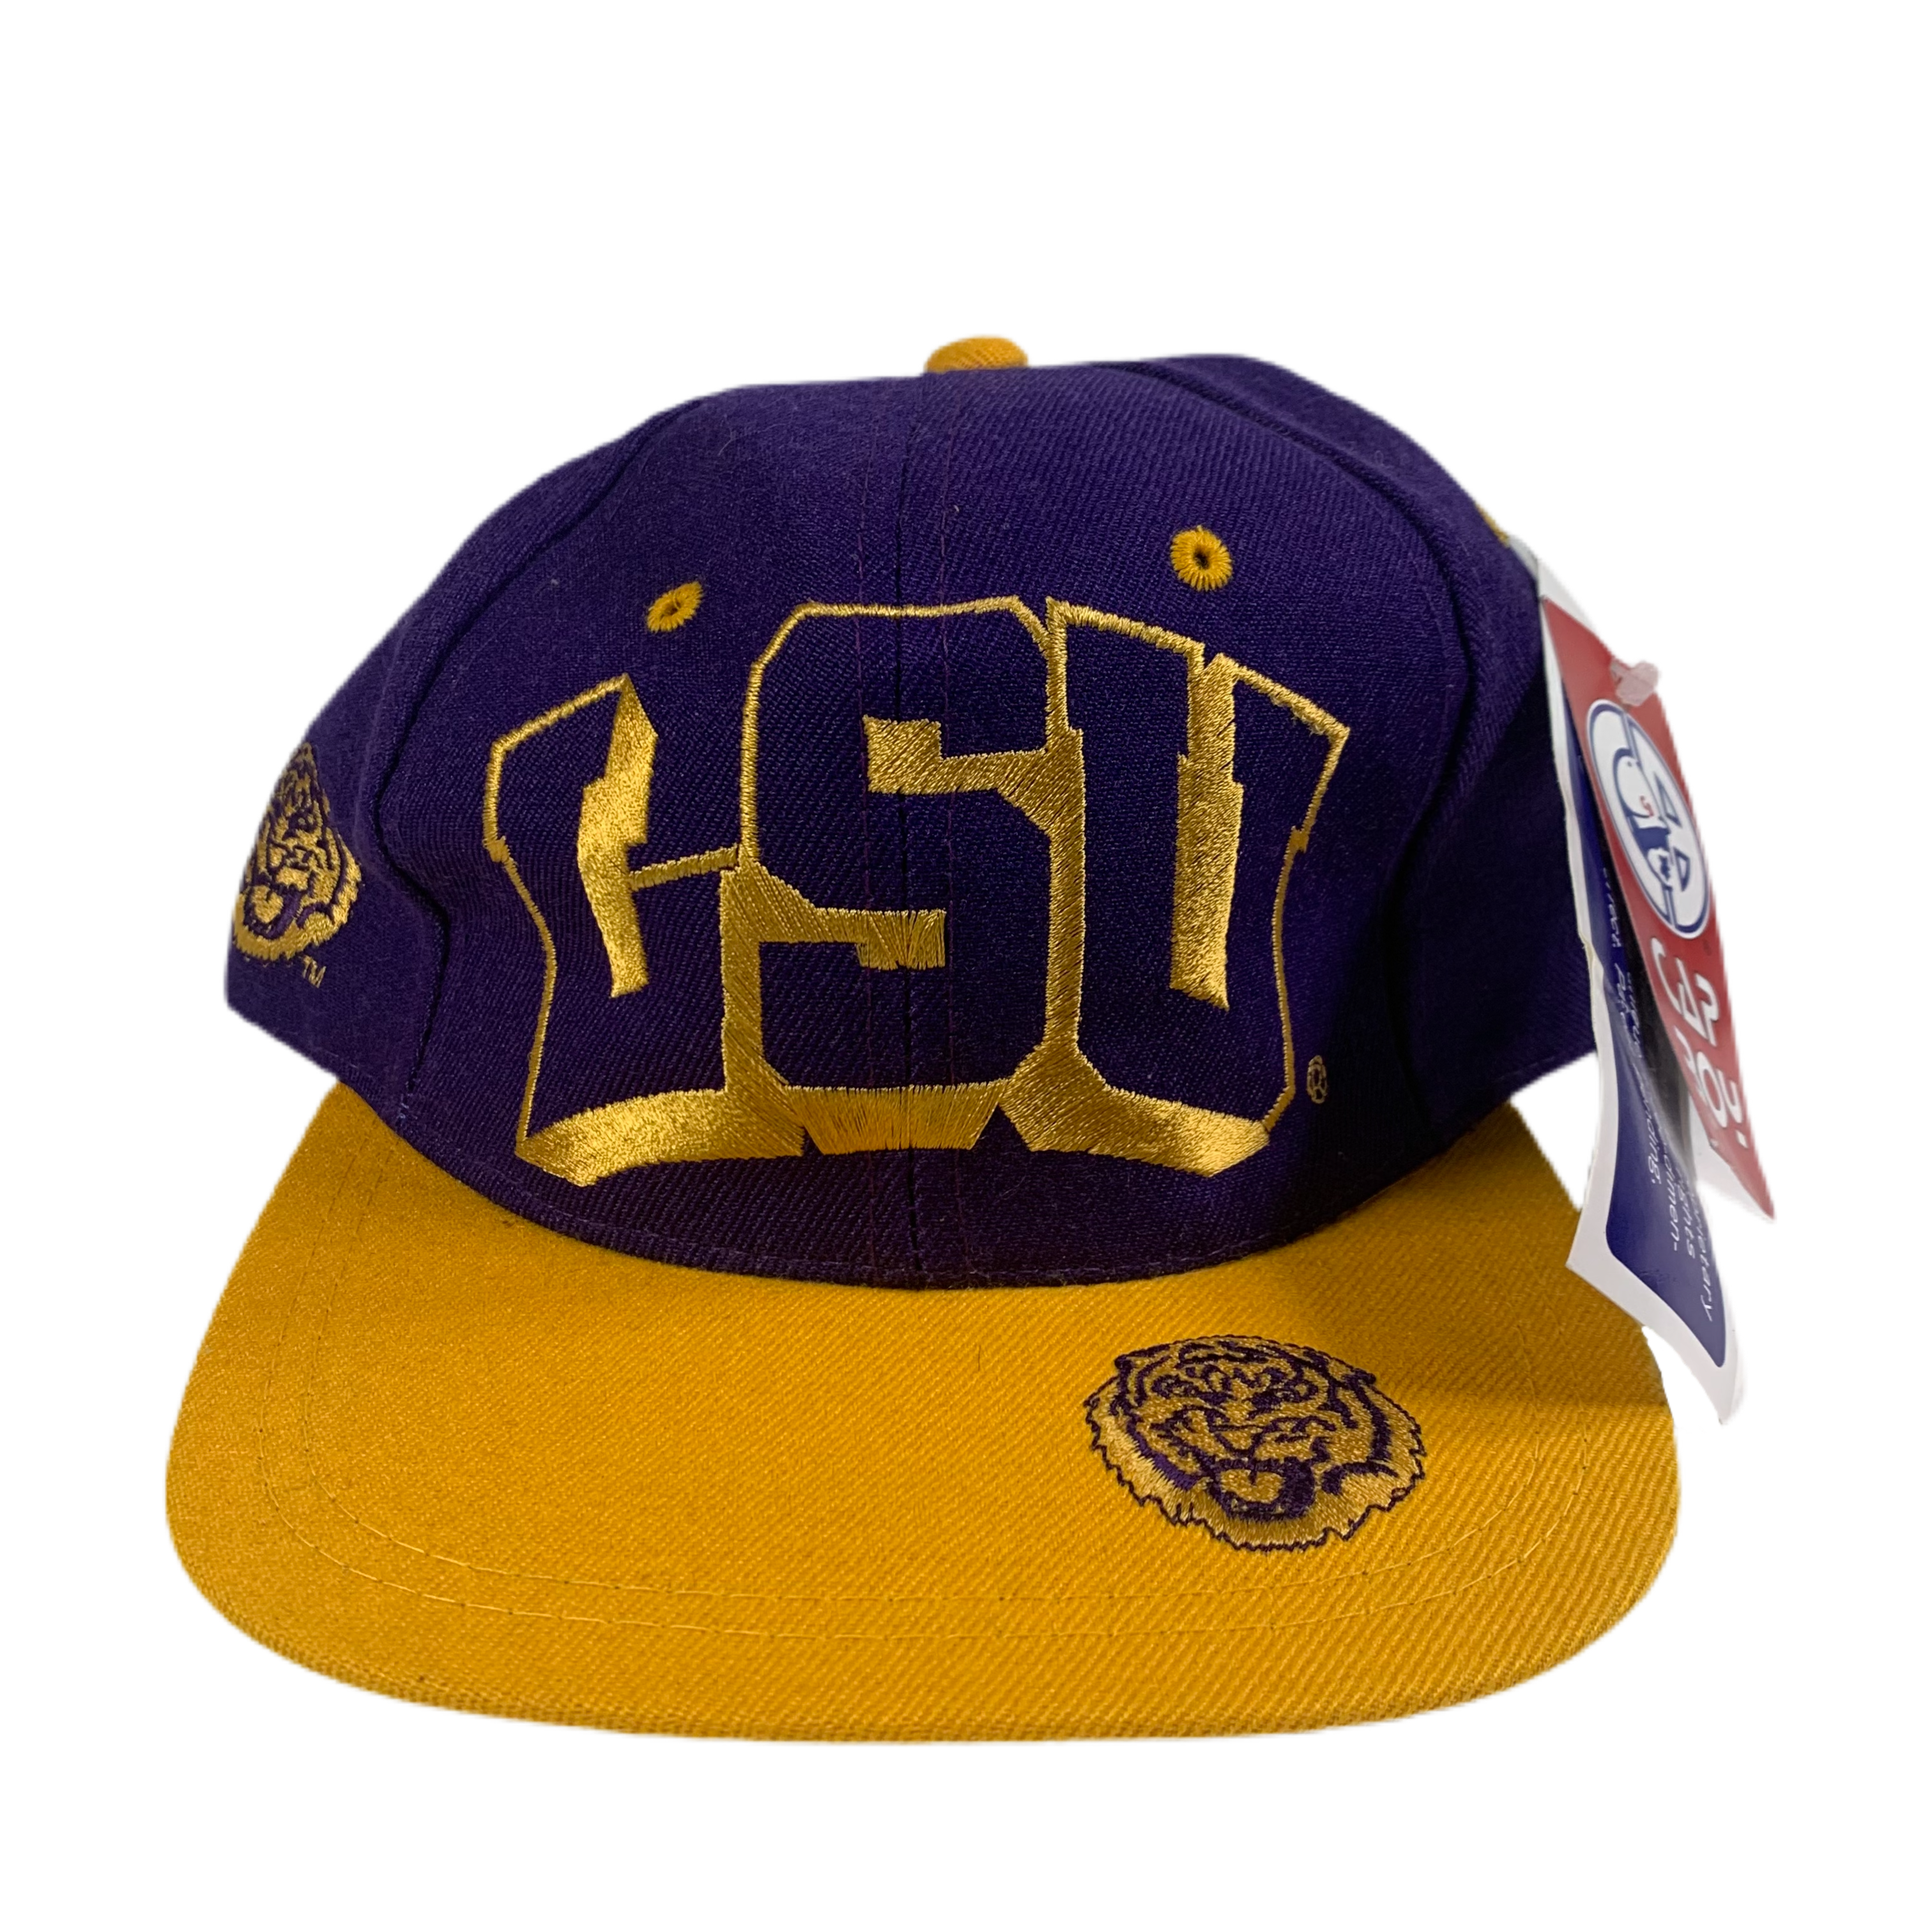 Louisiana State University Hats, Snapback, LSU Tigers Caps